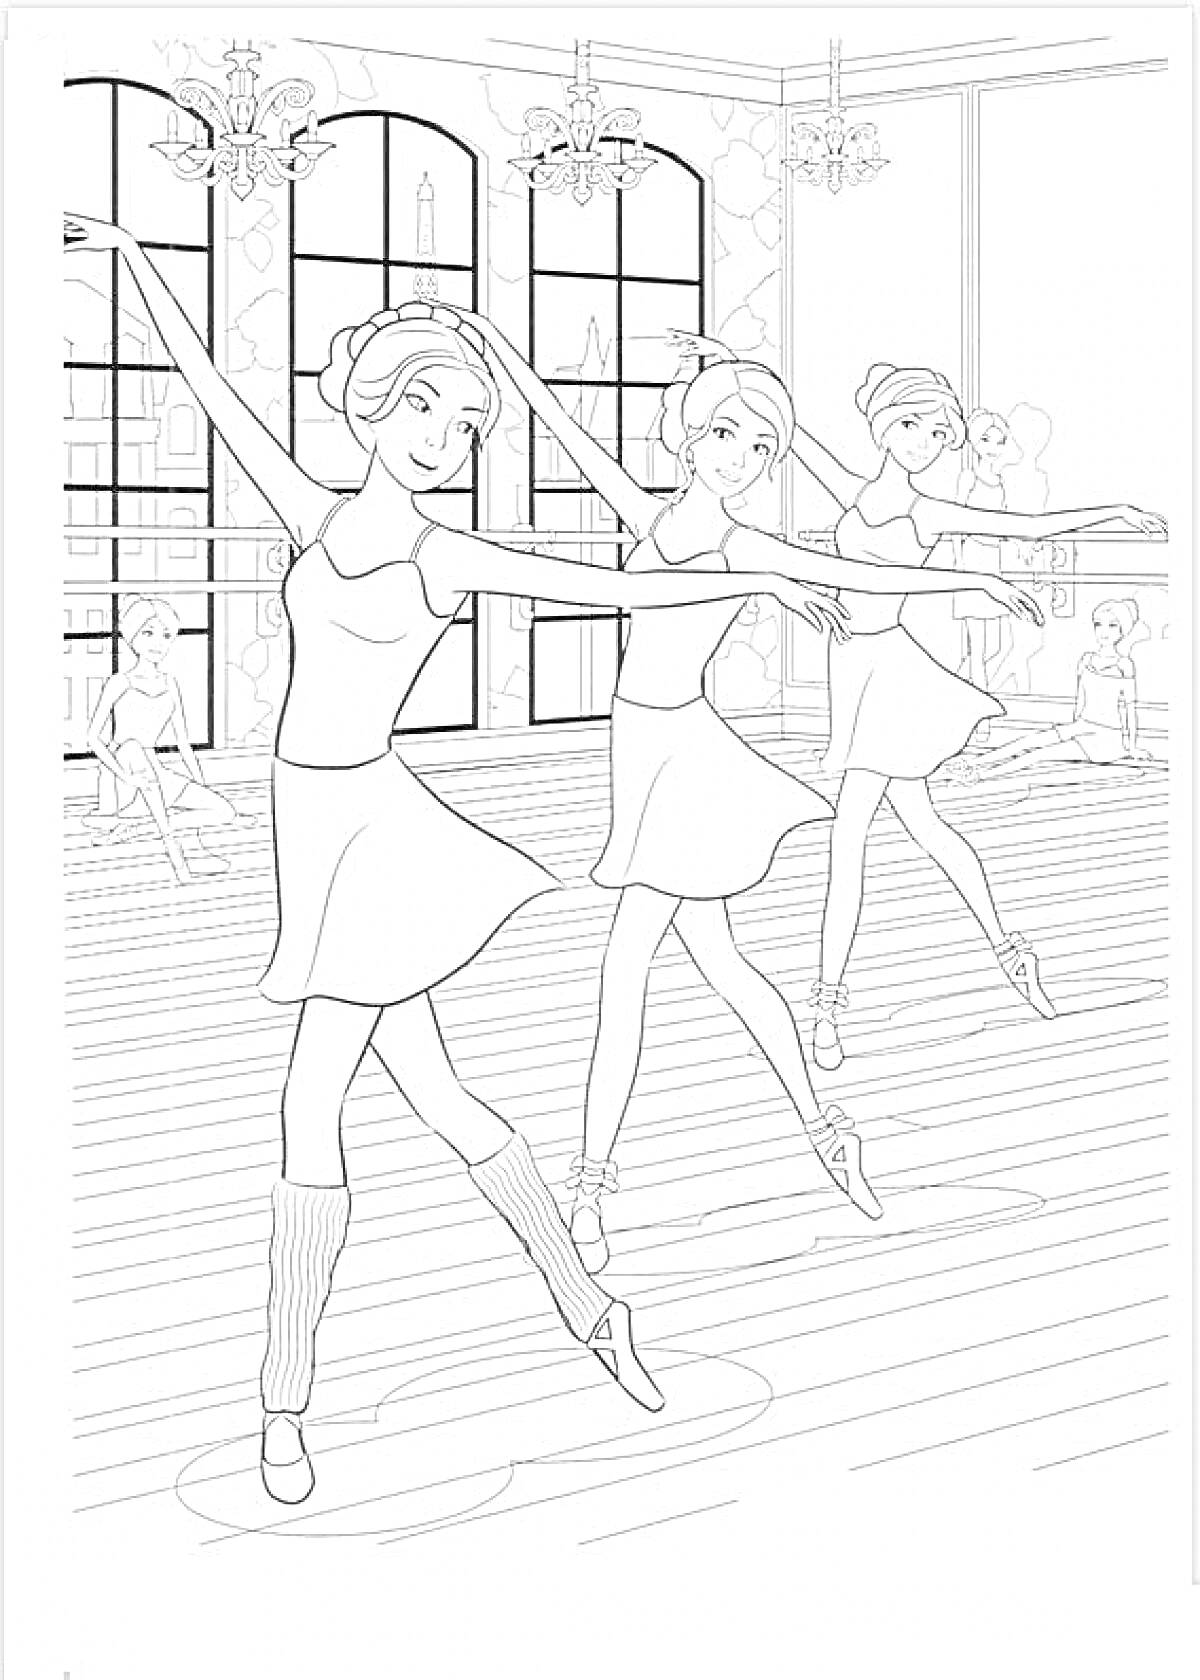 Балетный зал с тремя танцующими балеринами, окнами, люстрами и зеркалами